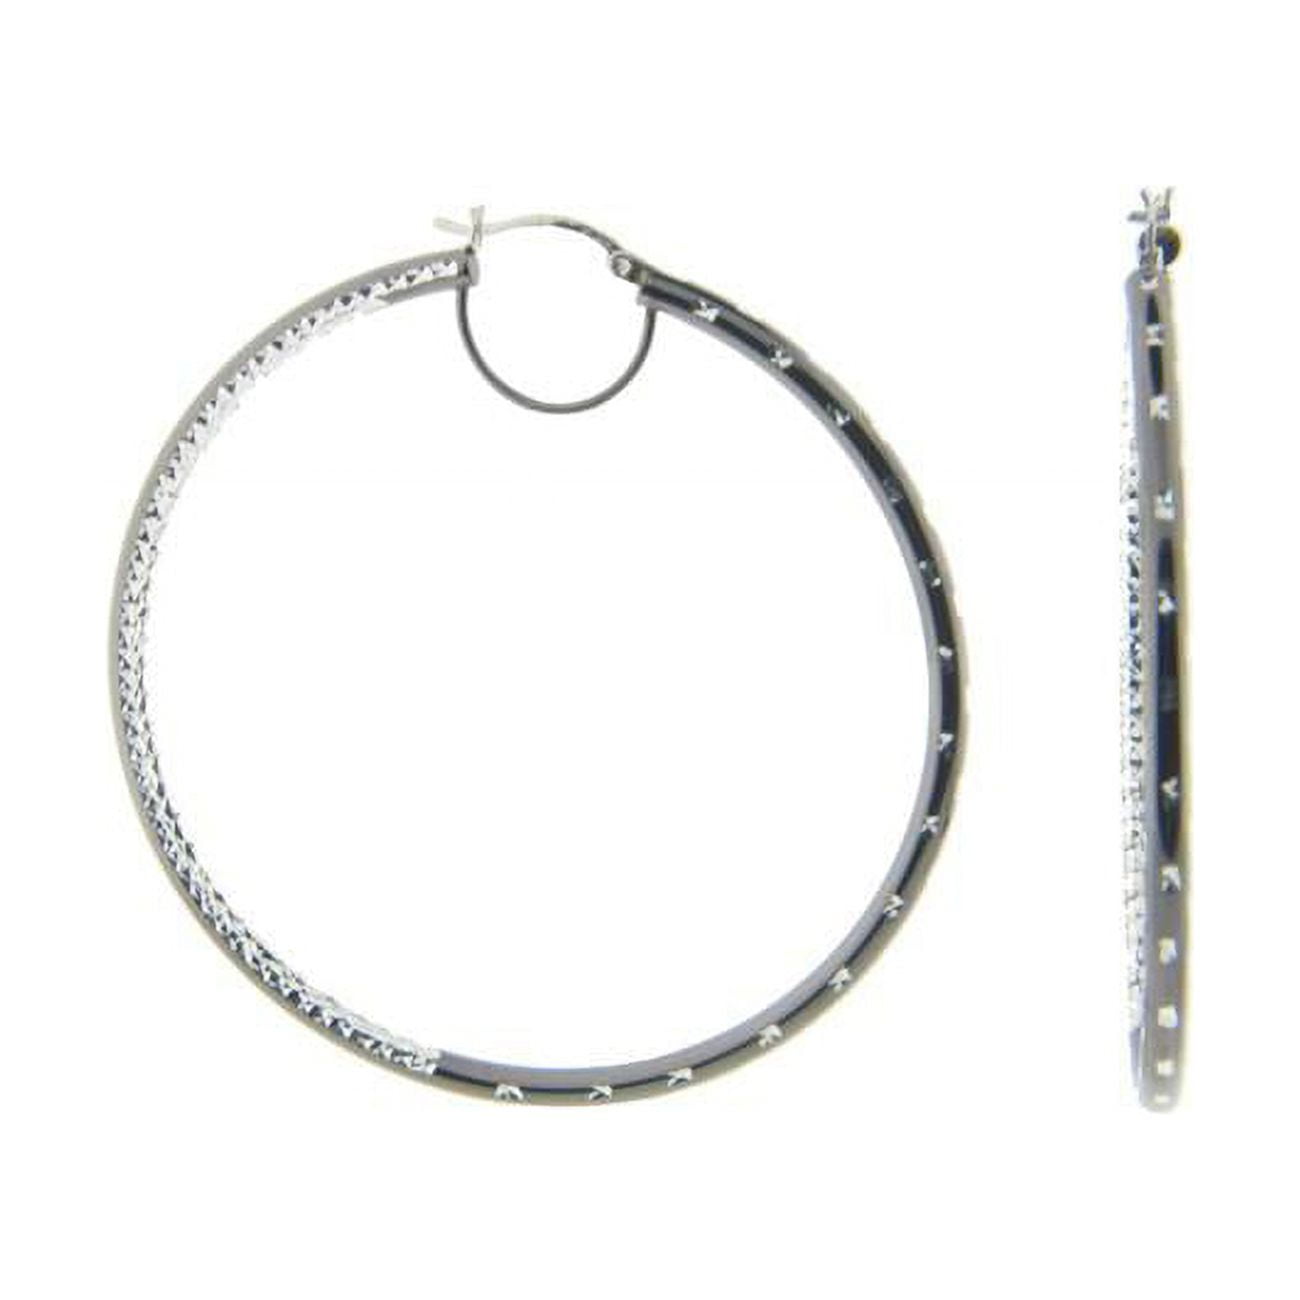 155103b Large Diamond Cut Hoop Earrings In Sterling Silver & Black Rhodium